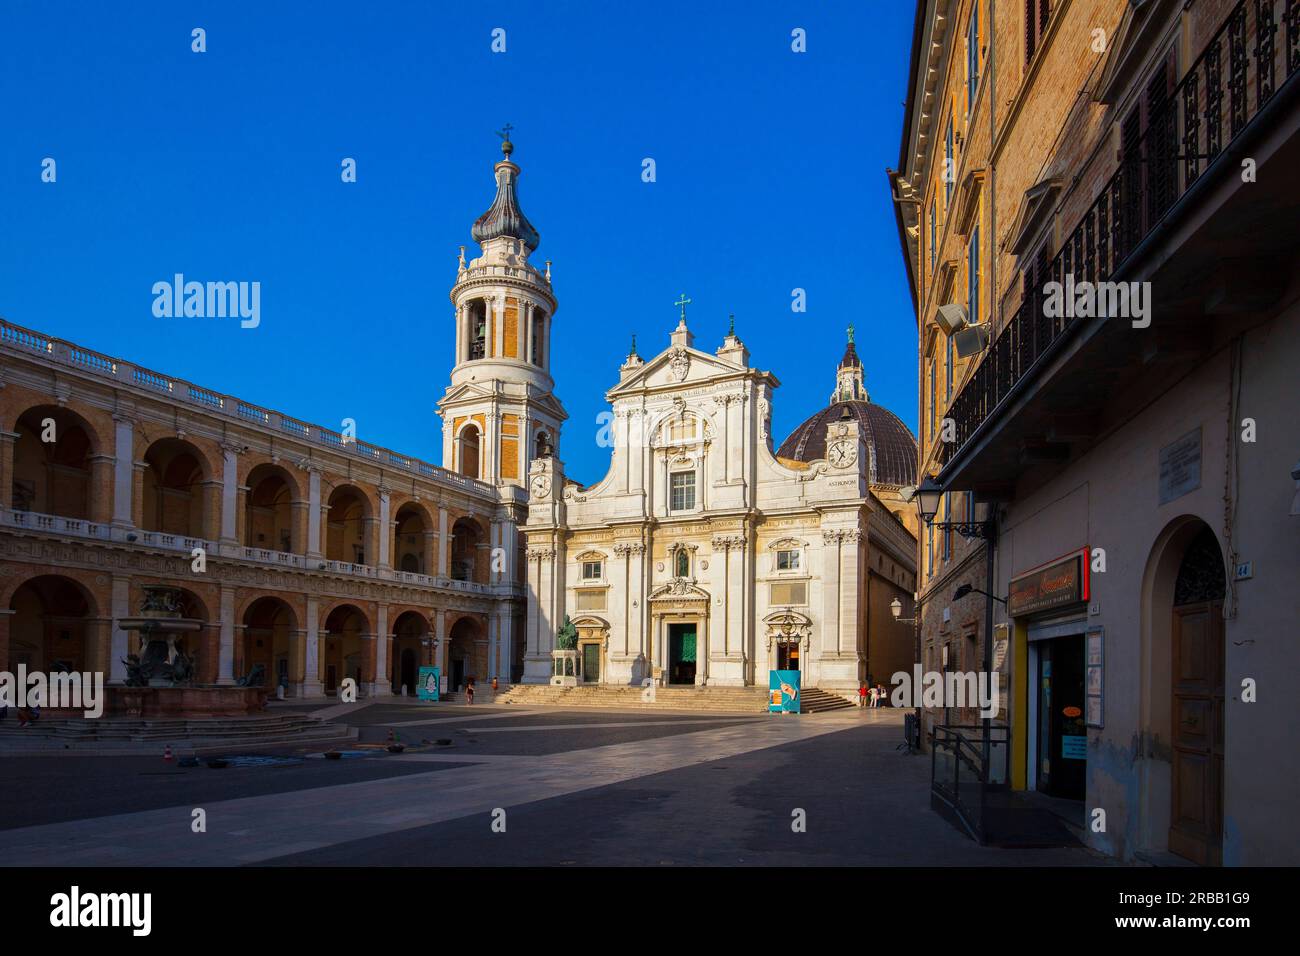 Basilica of the Holy House, Piazza della Madonna, Loreto, Ancona, Marche, Italy Stock Photo